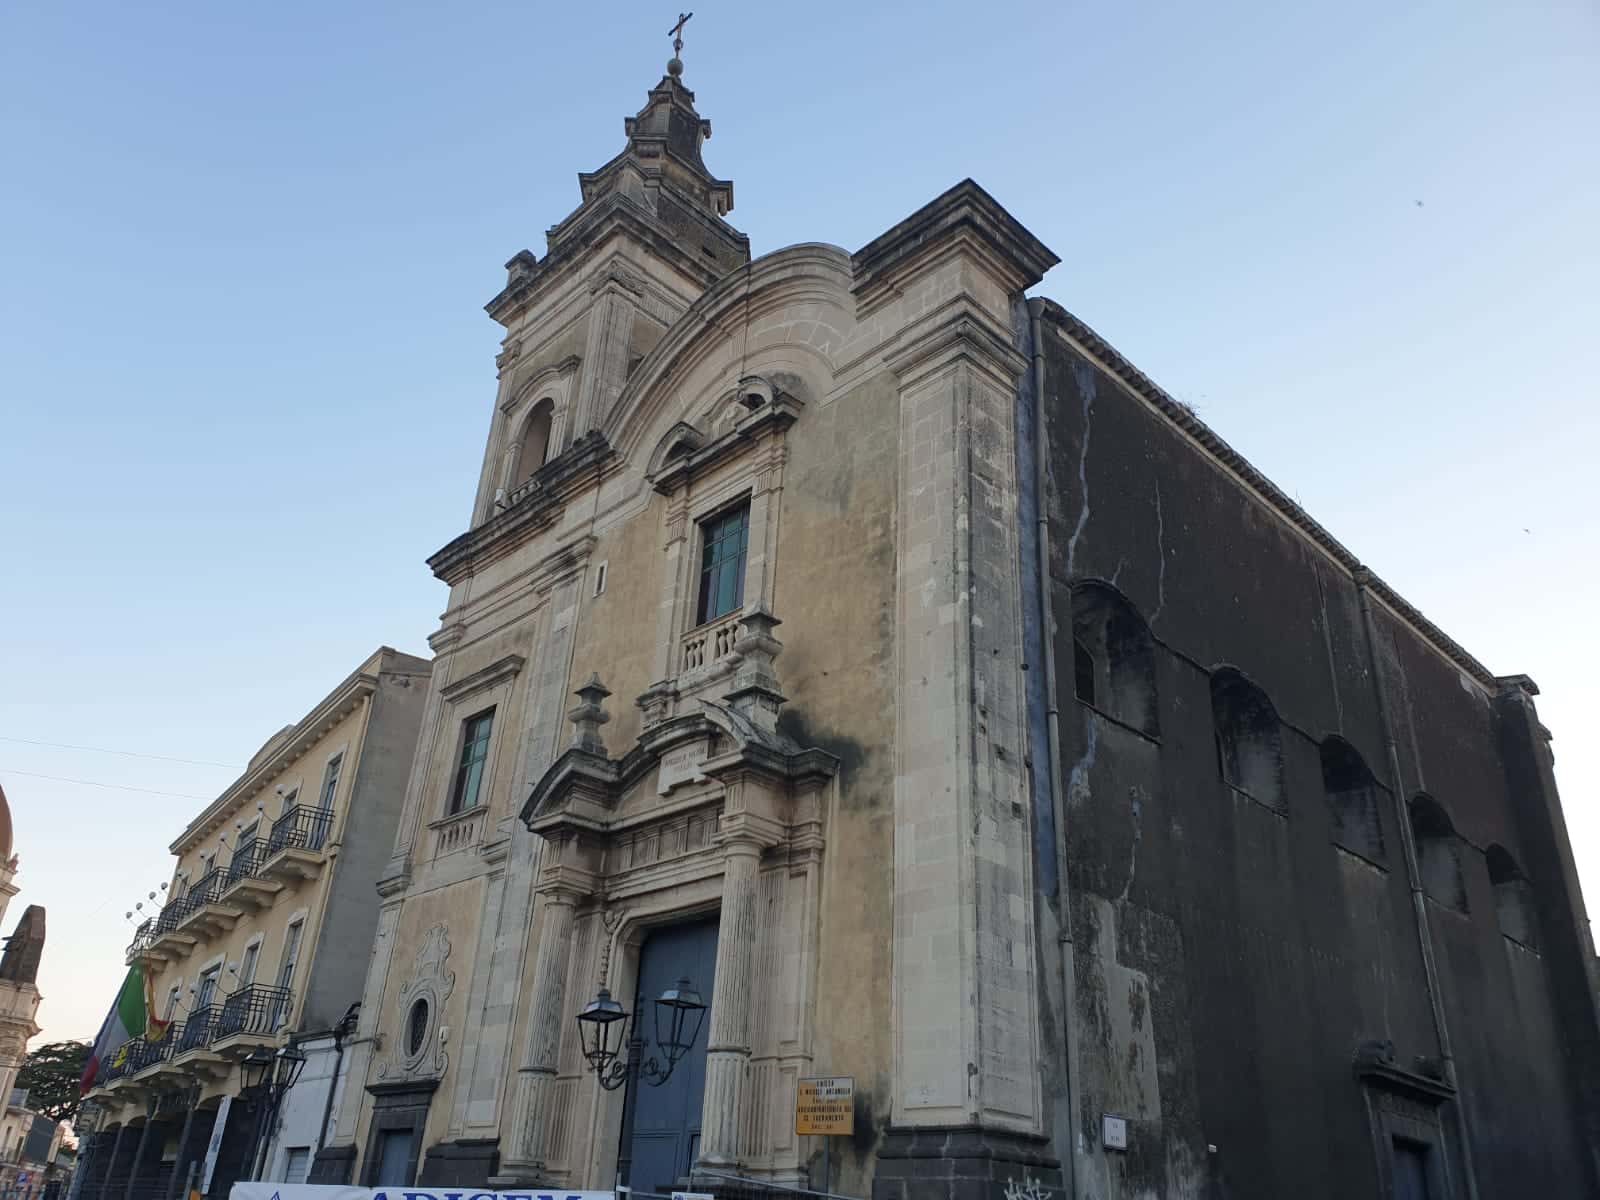 Sisma Santo Stefano, lavori di consolidamento e restauro: 90mila euro per la chiesa “San Michele Arcangelo” di Aci Sant’Antonio